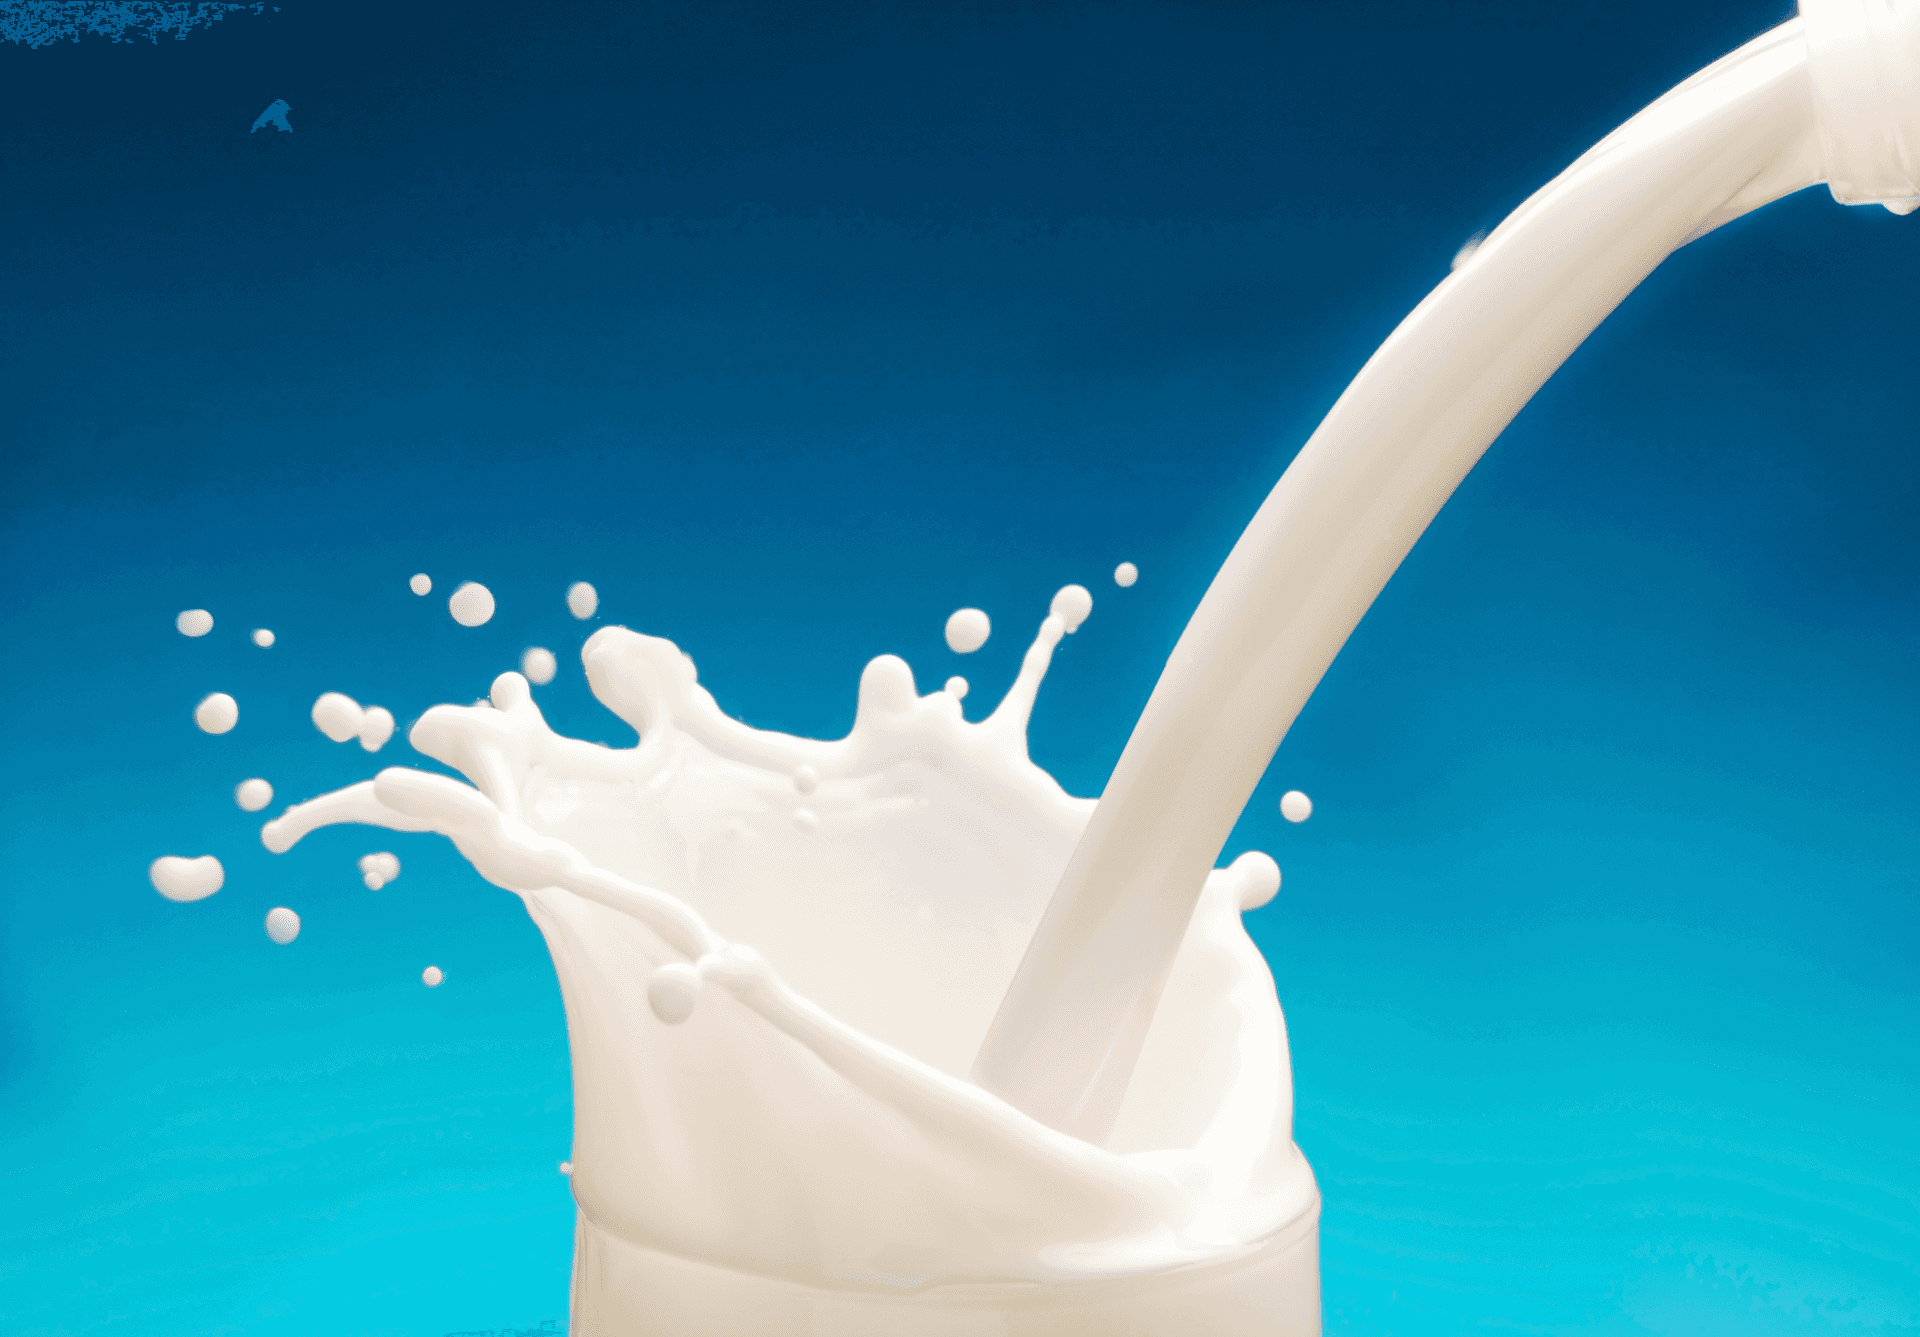 Milk Background